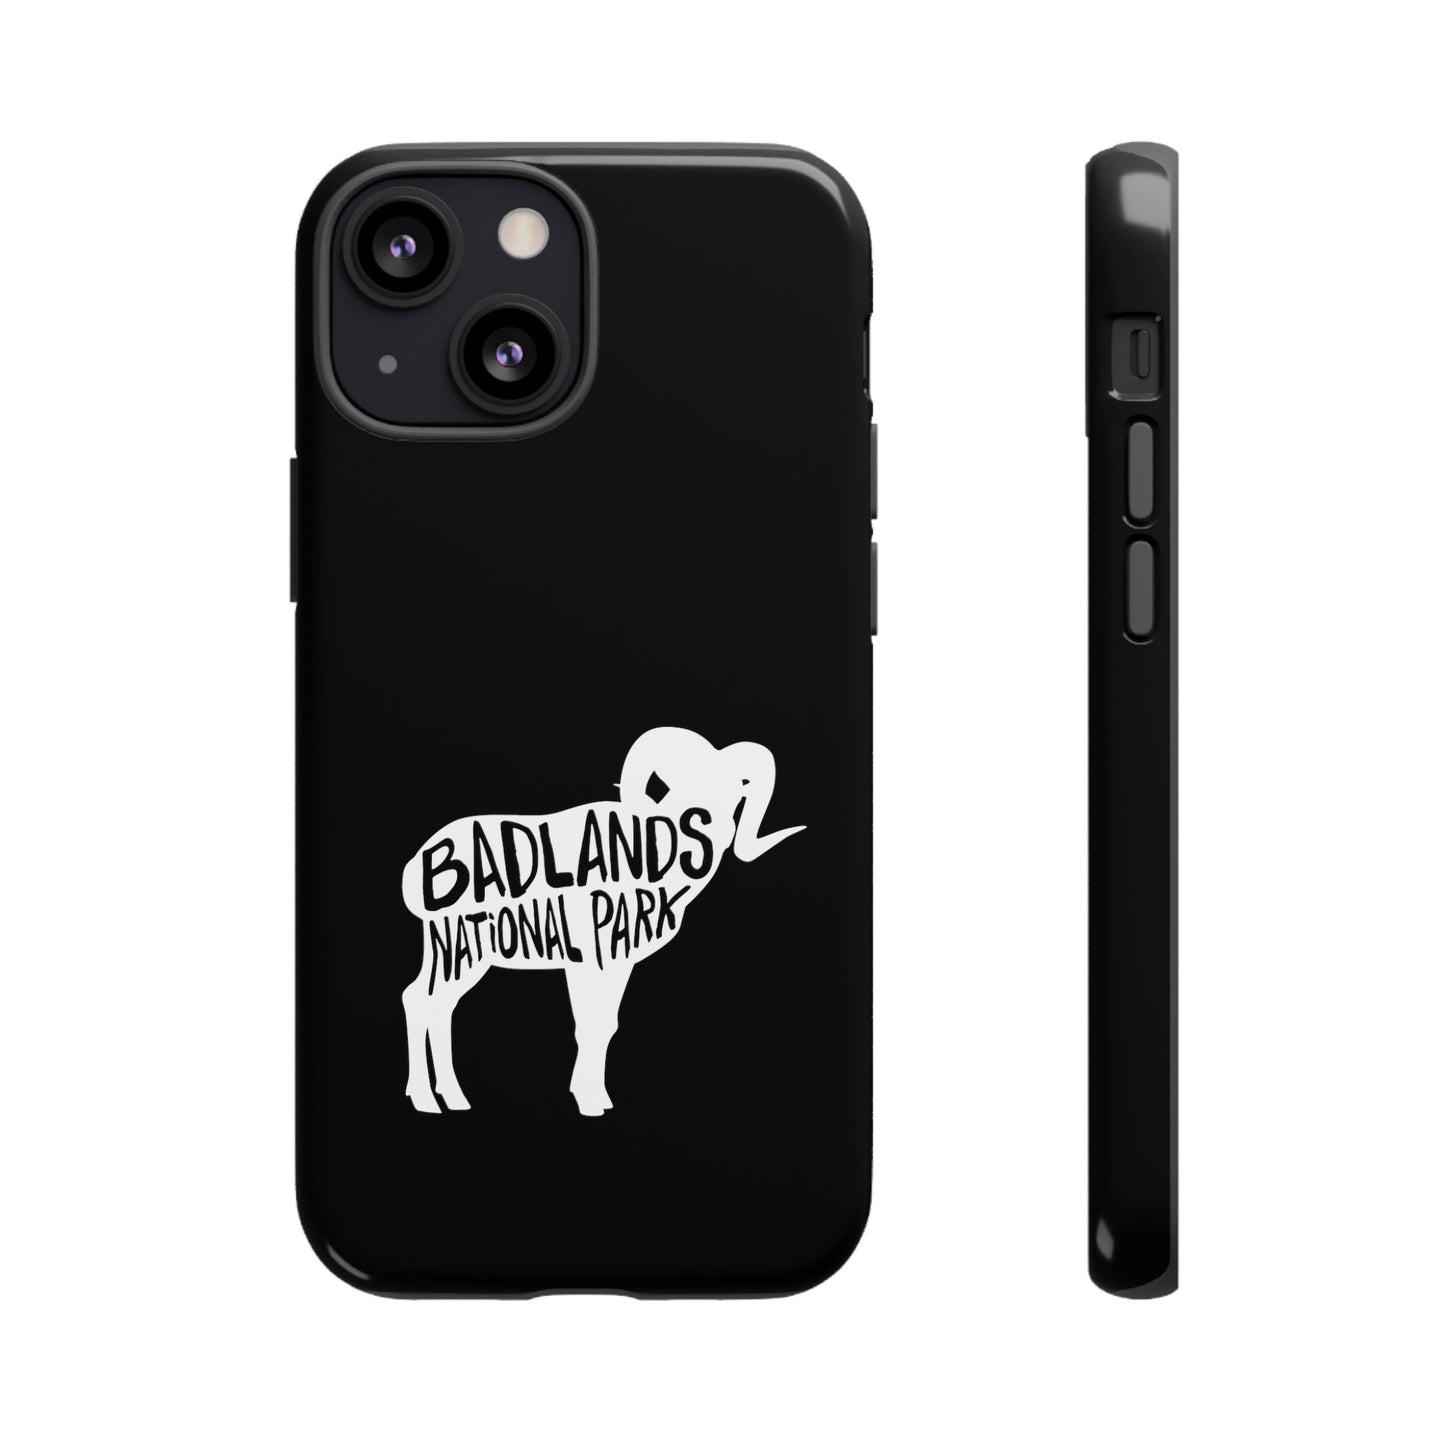 Badlands National Park Phone Case - Bighorn Sheep Design